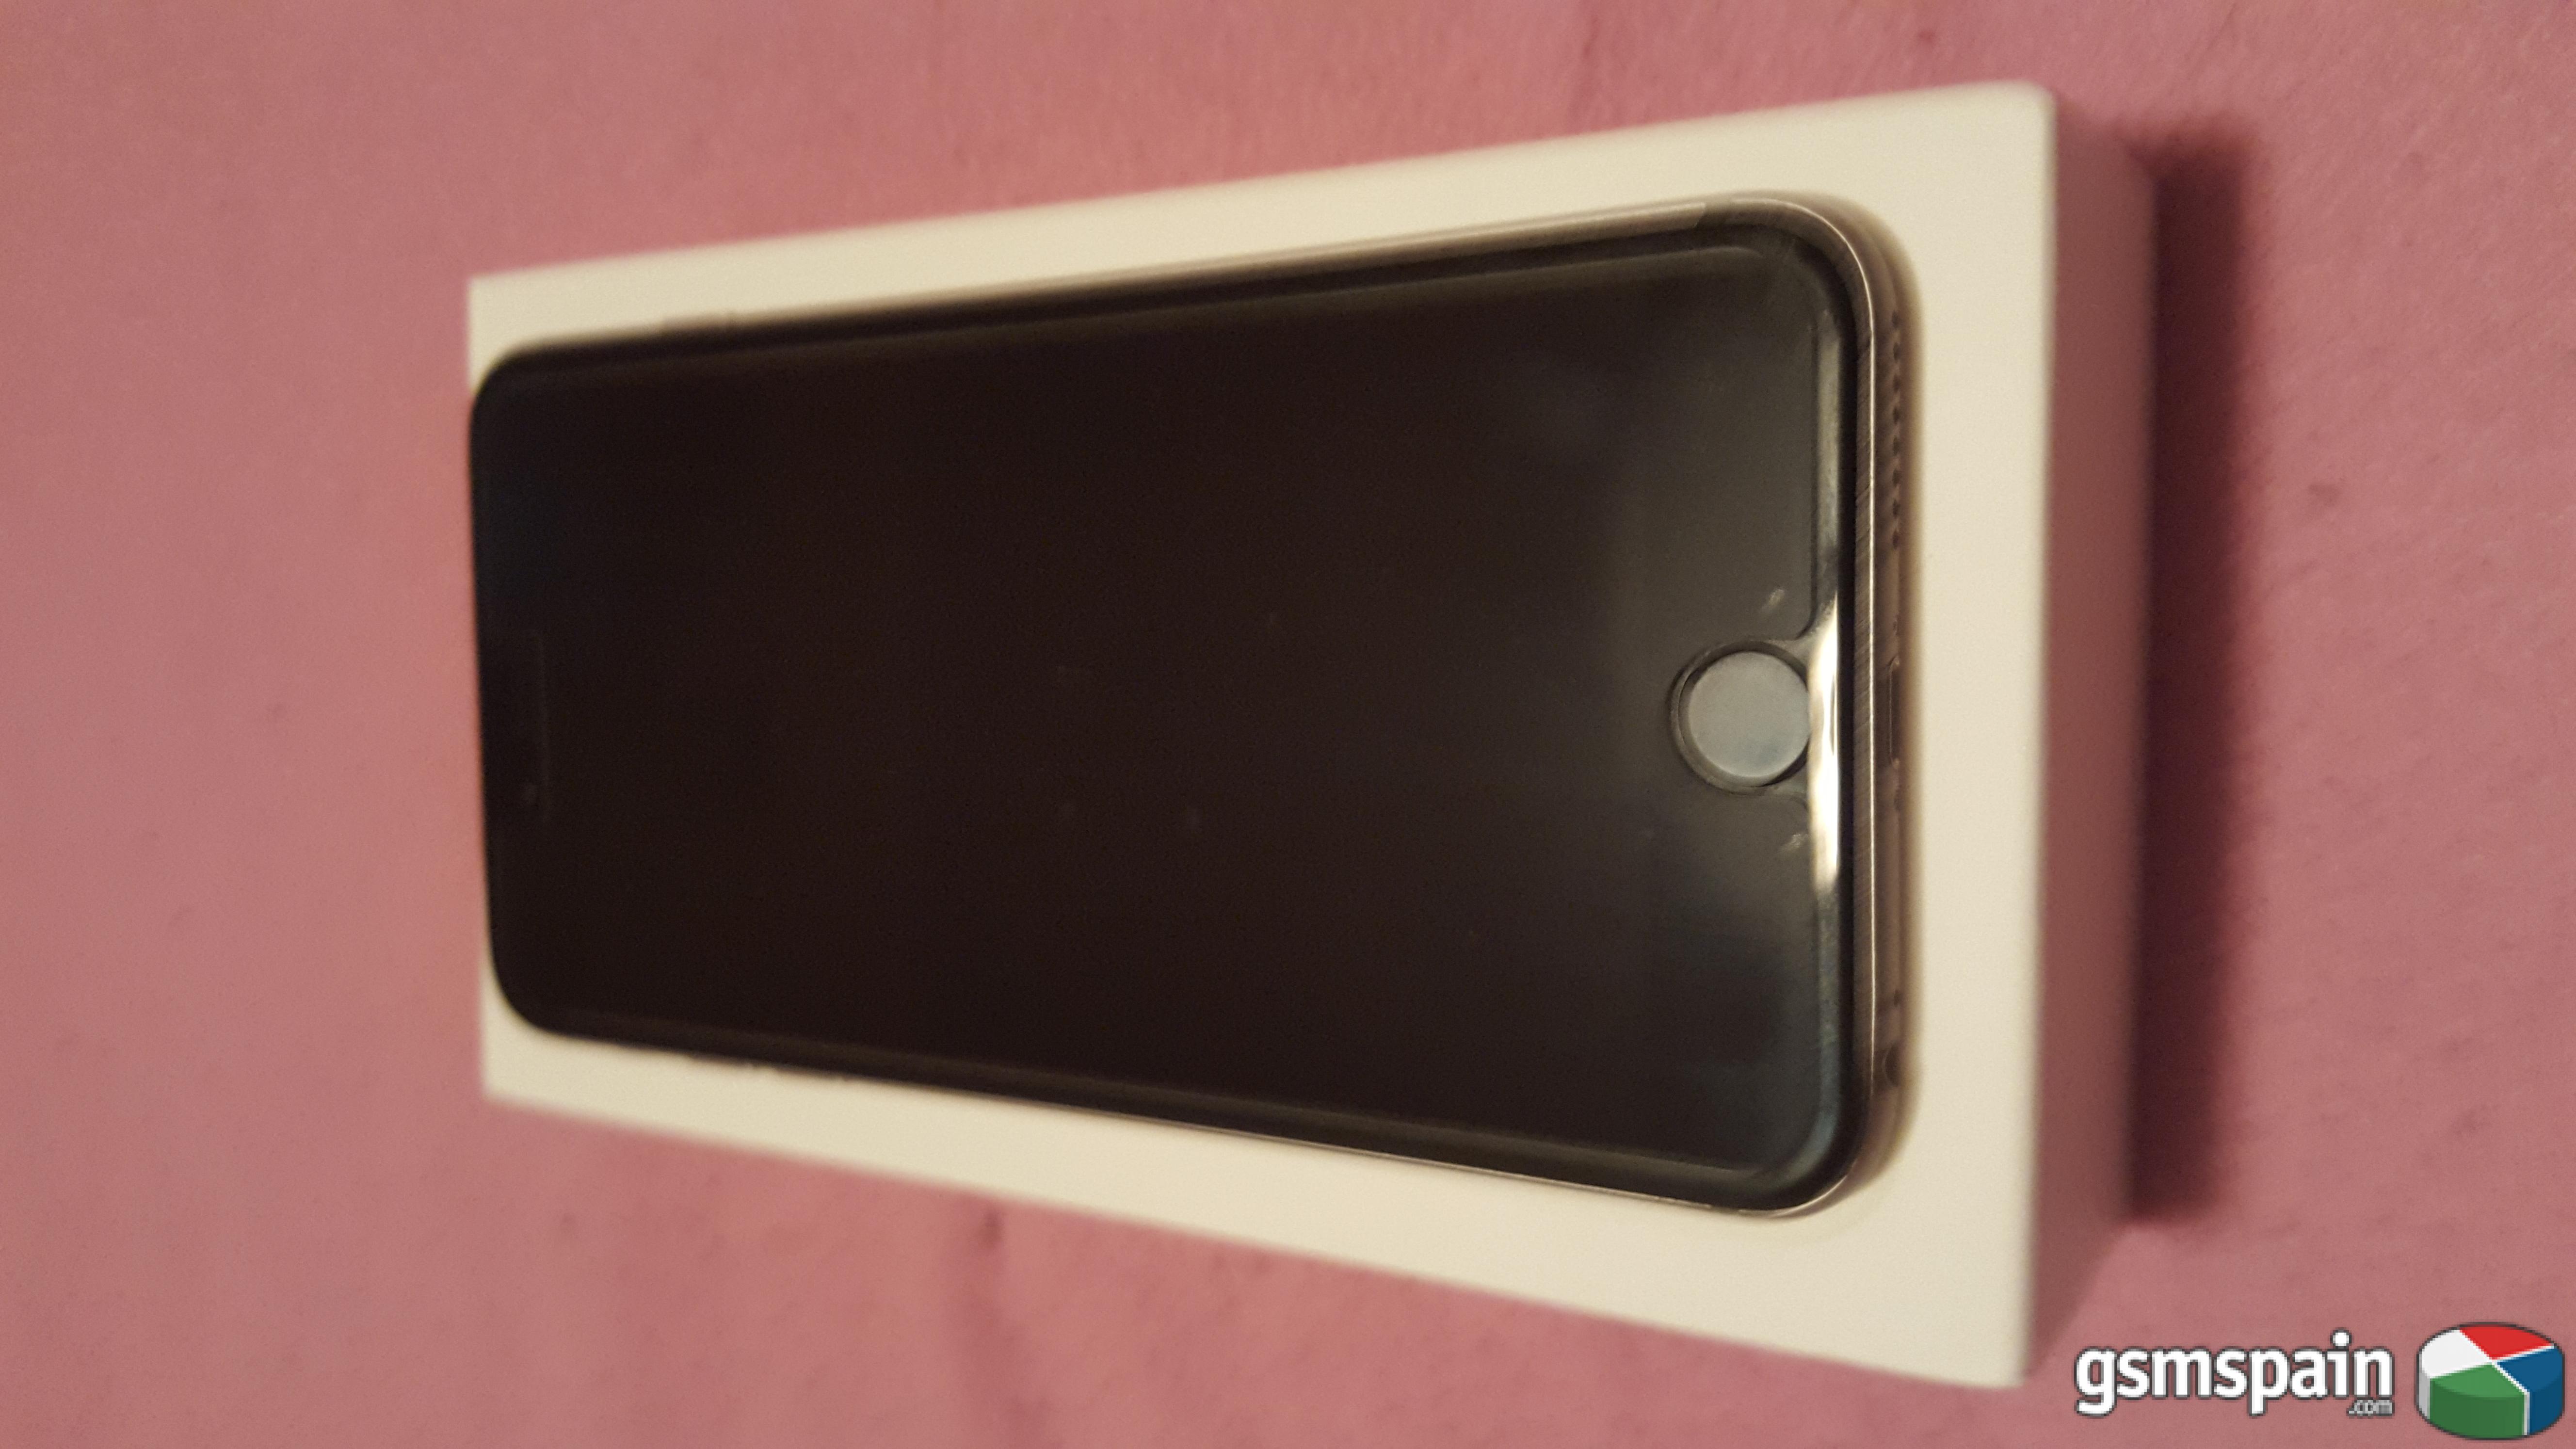 [VENDO] iphone 6 plus 16 gb negro spacial muy nuevo con factura media markt menos de 3 semana